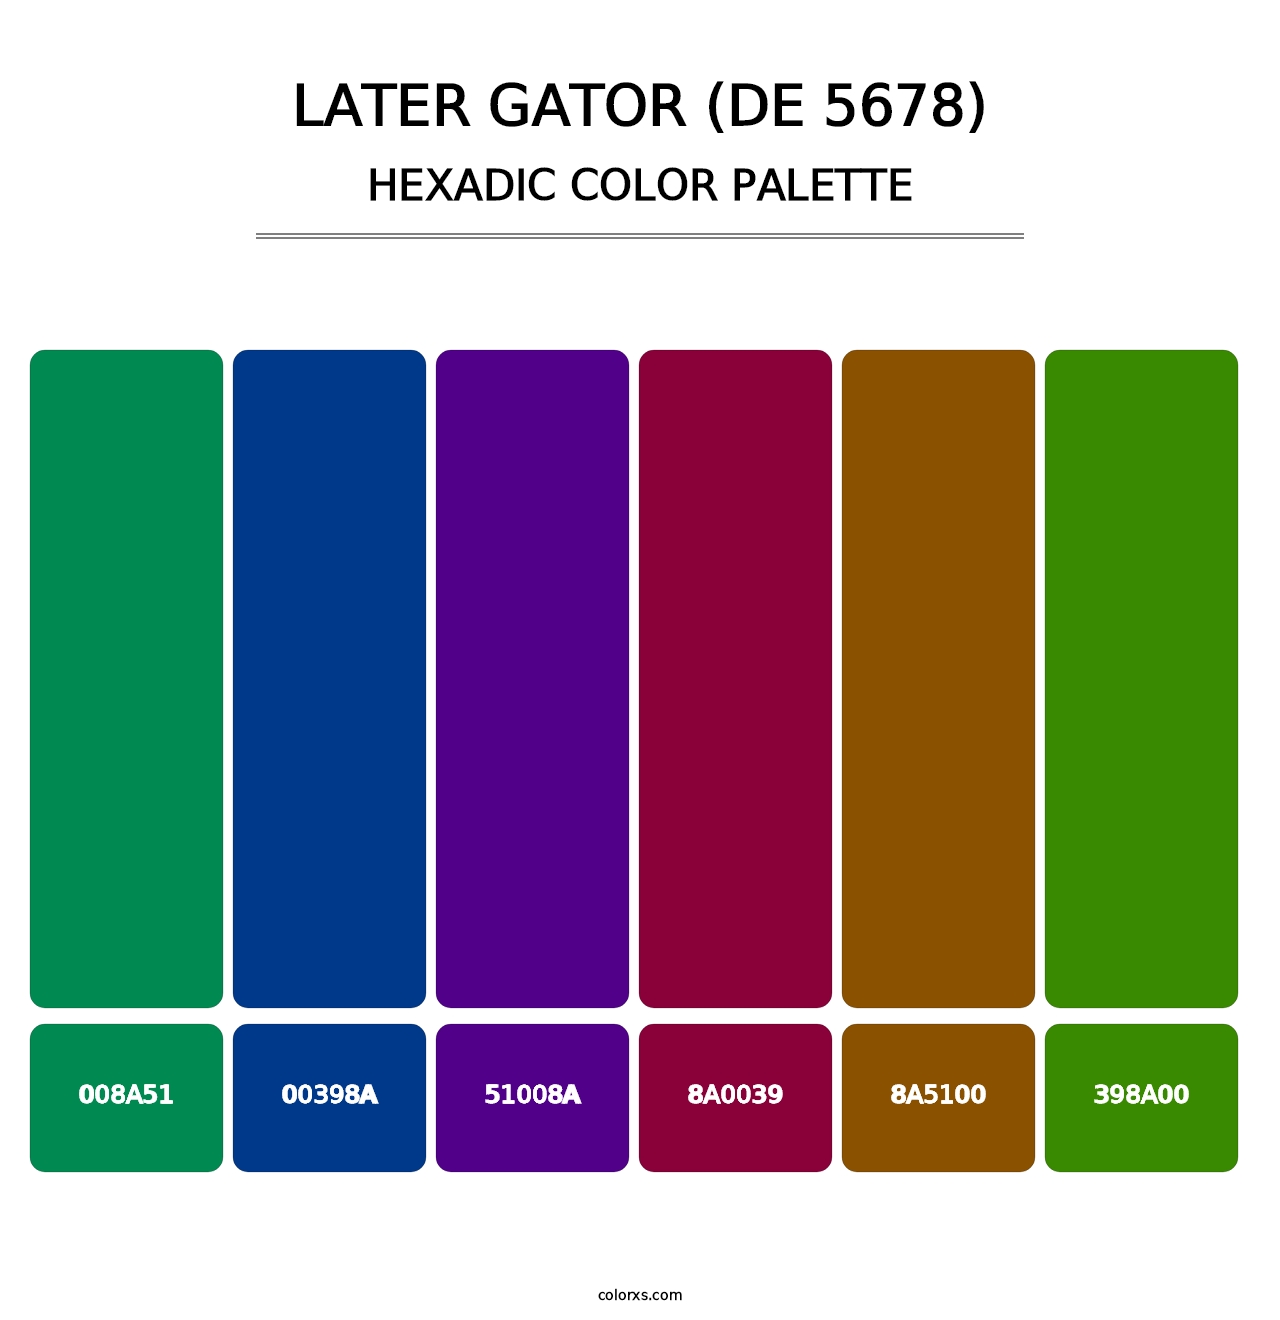 Later Gator (DE 5678) - Hexadic Color Palette